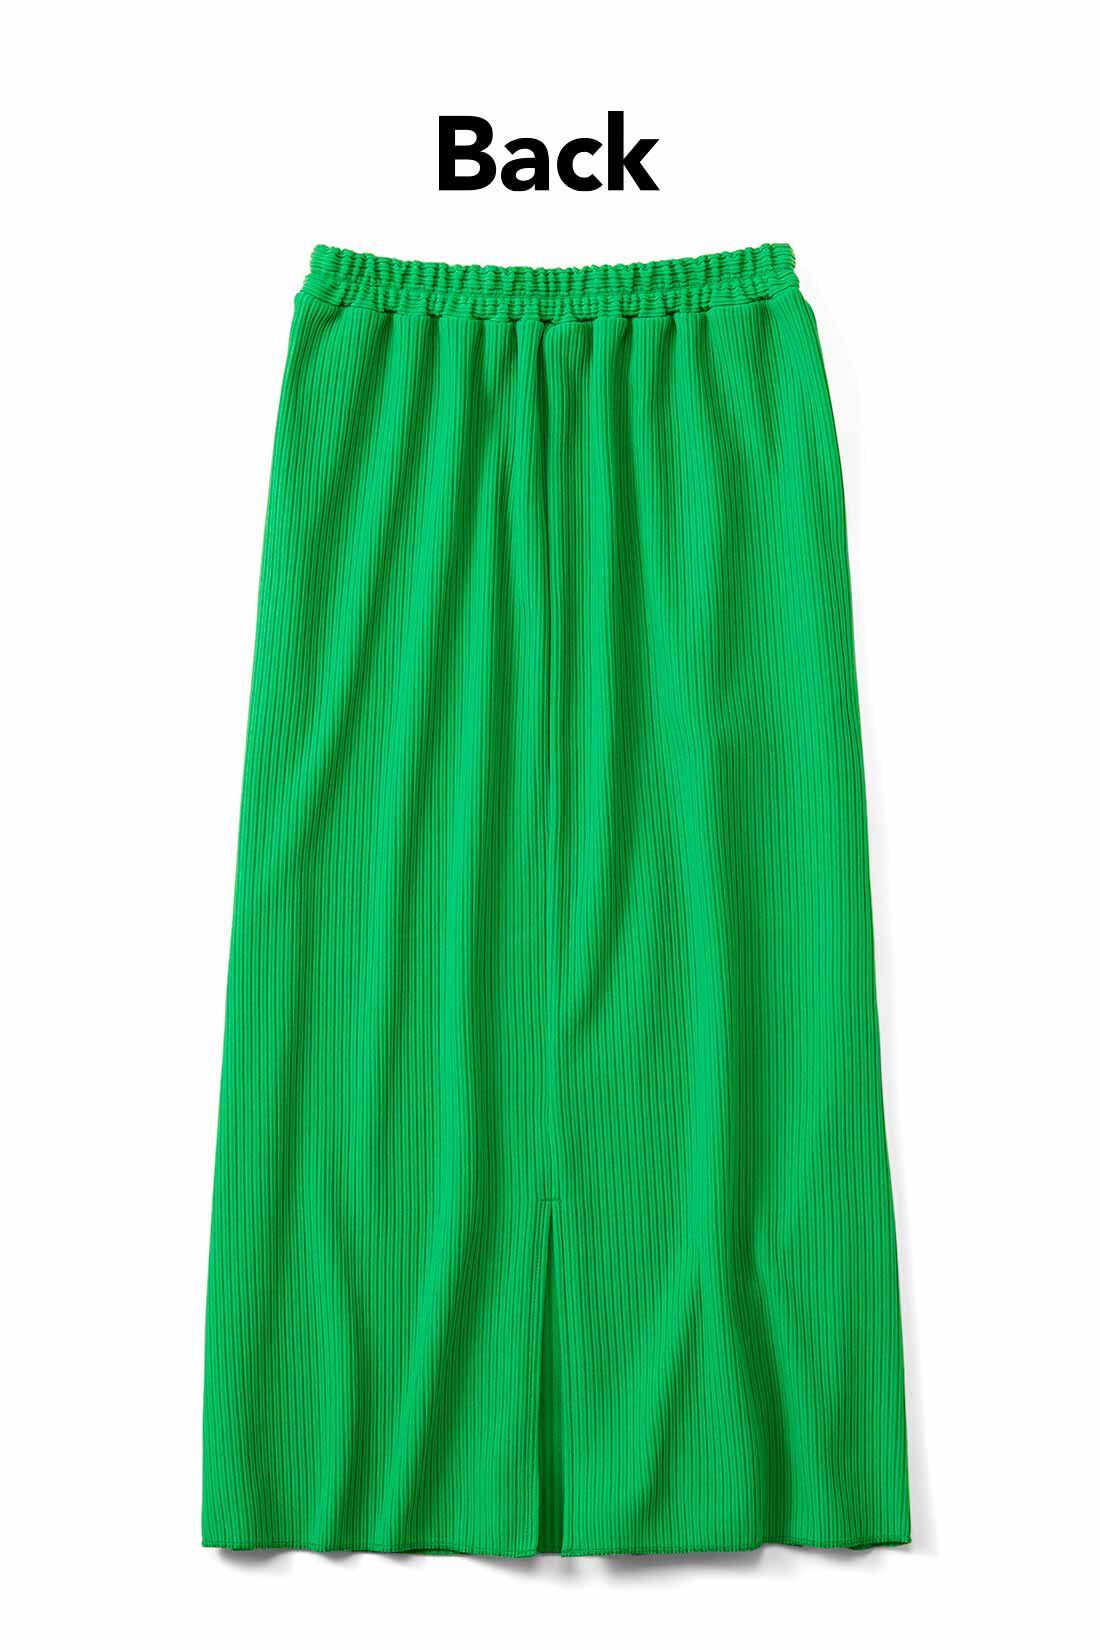 IEDIT|IEDIT[イディット]　ニットライクなリップルカットソー素材で仕立てた らくちんきれいなIラインスカート〈5〉|足さばきのいいスリット入り。お届けするカラーとは異なります。